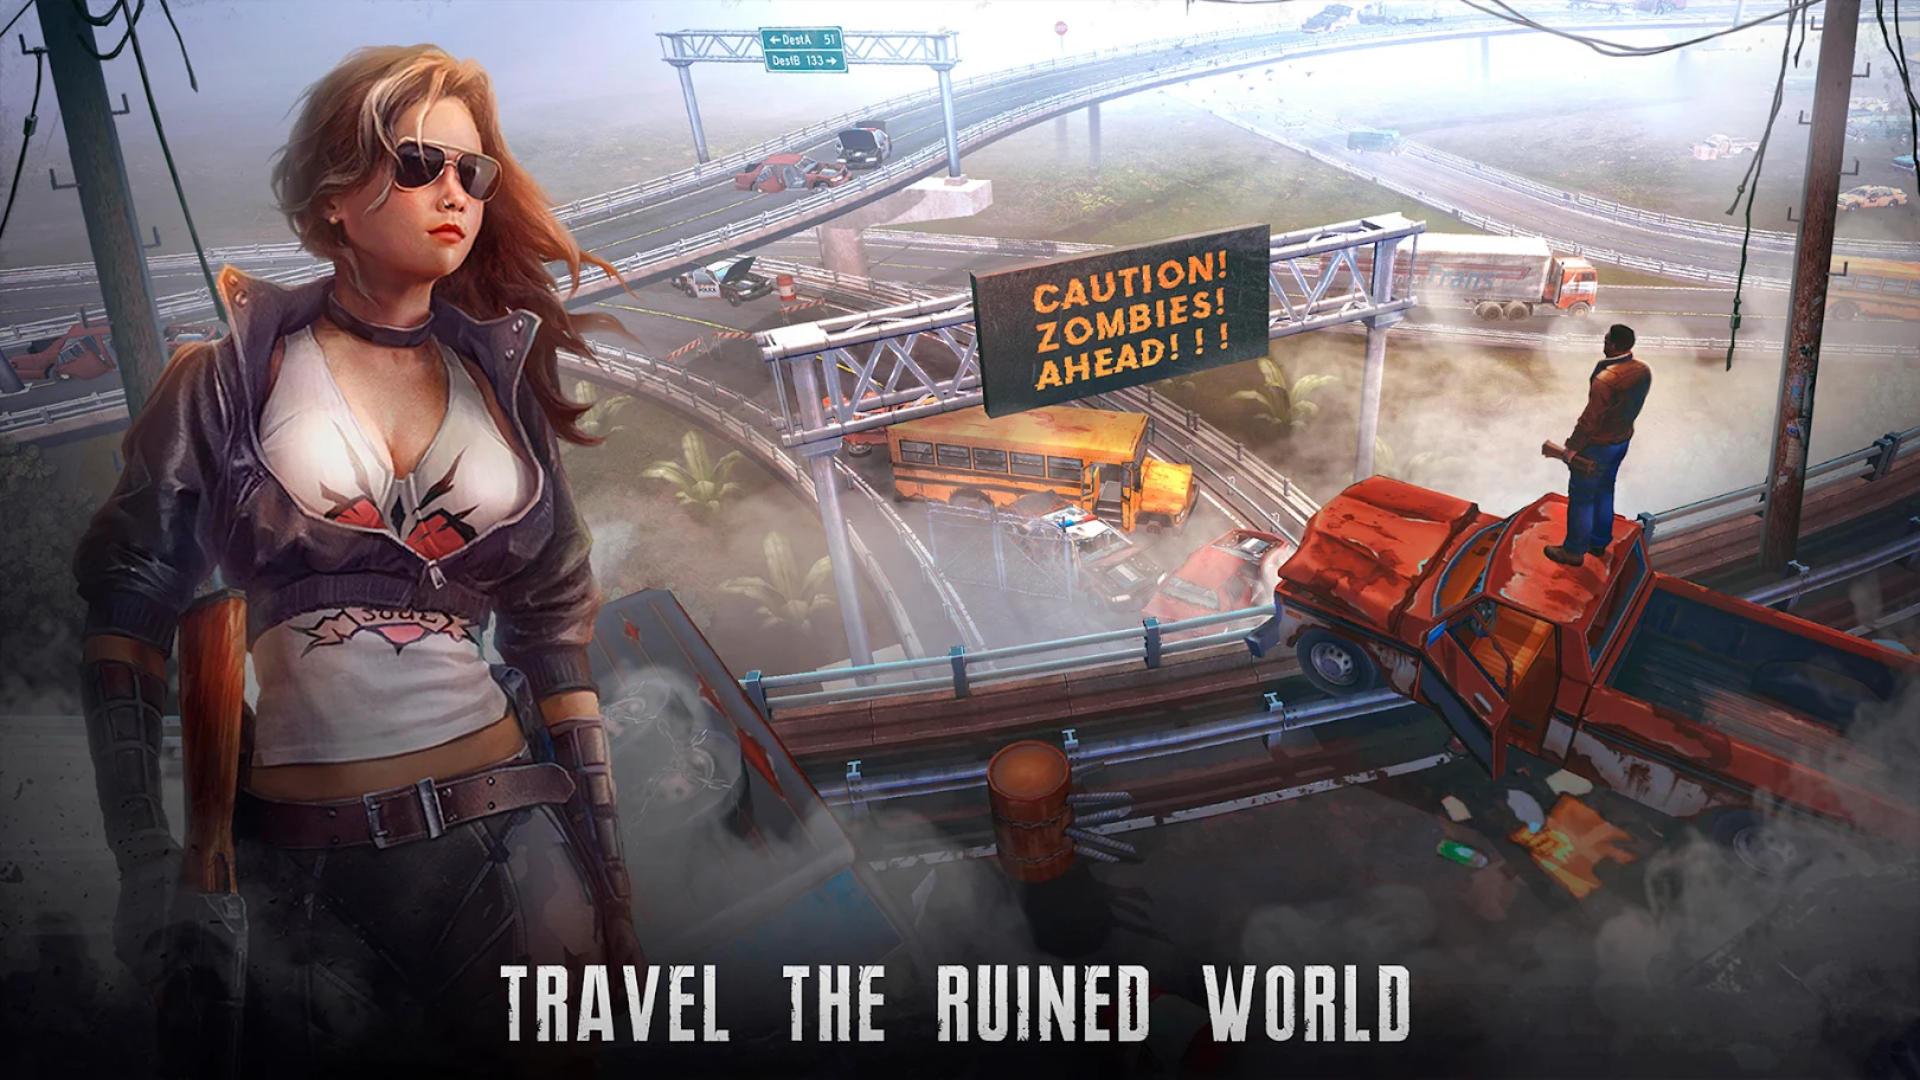 Permainan Survival Terbaik di Mobile: Live atau Die. Imej menunjukkan gambar seorang wanita dalam cermin mata hitam berhampiran jalan raya yang ditinggalkan, dengan teksnya